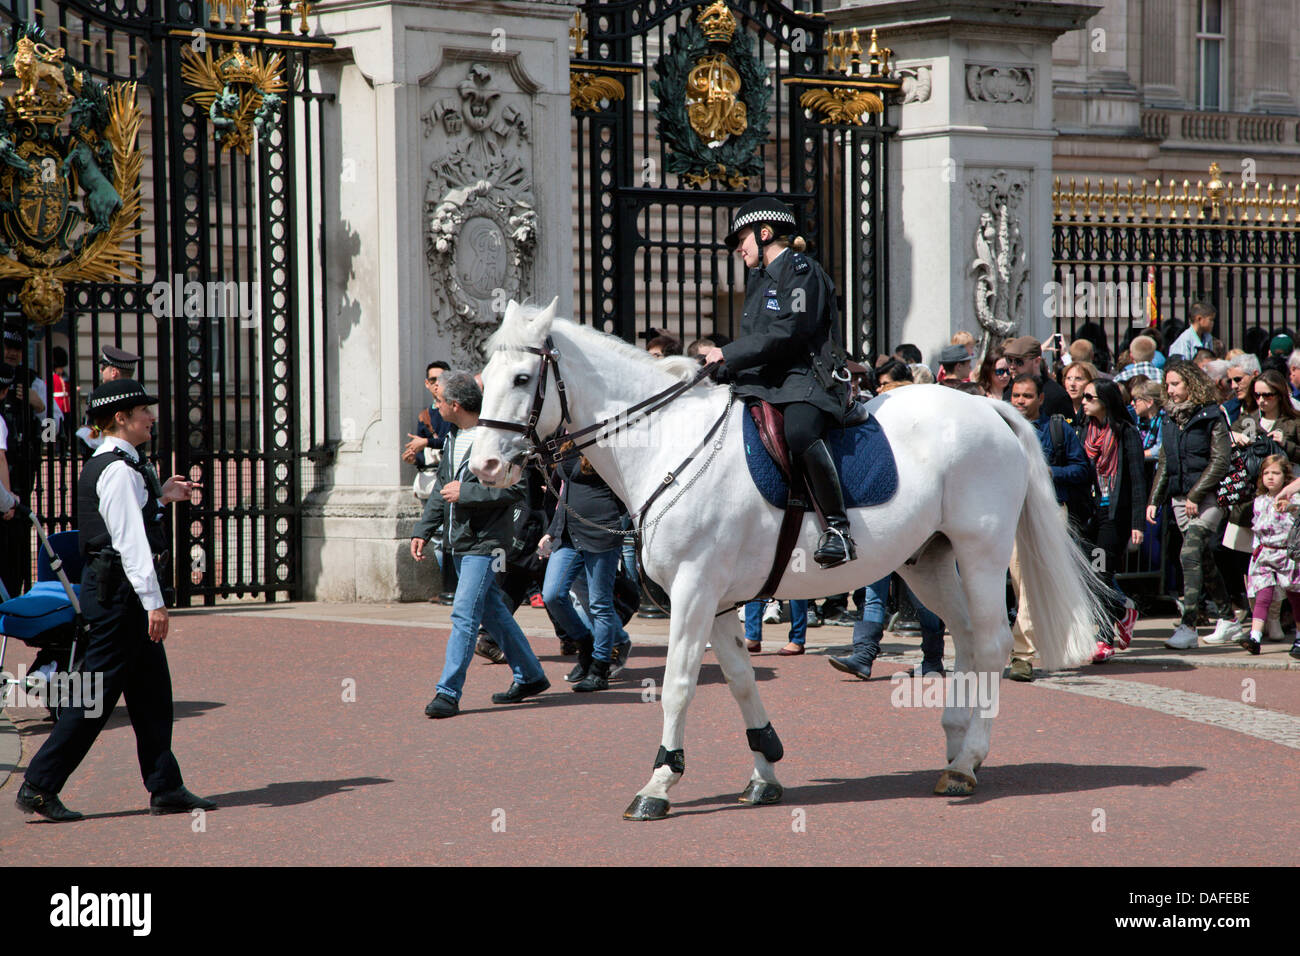 Londra - 17 Maggio: British guardia reale a cavallo e di eseguire il cambio della Guardia a Buckingham Palace, 17 maggio 2013 Foto Stock